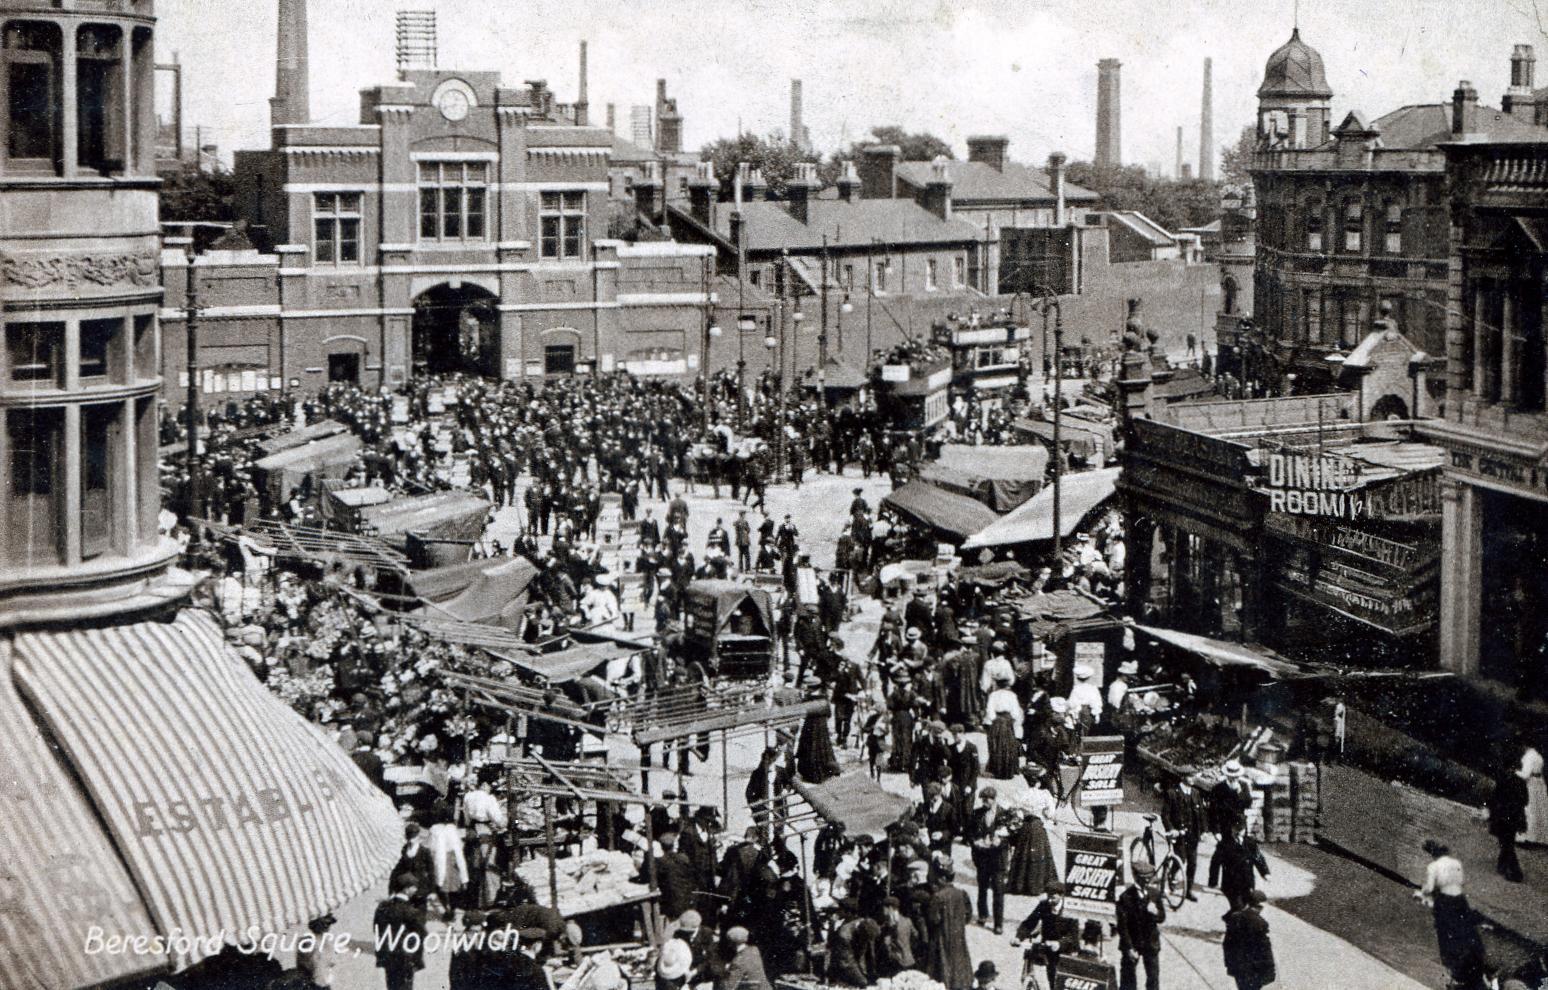 Beresford Square in 1915